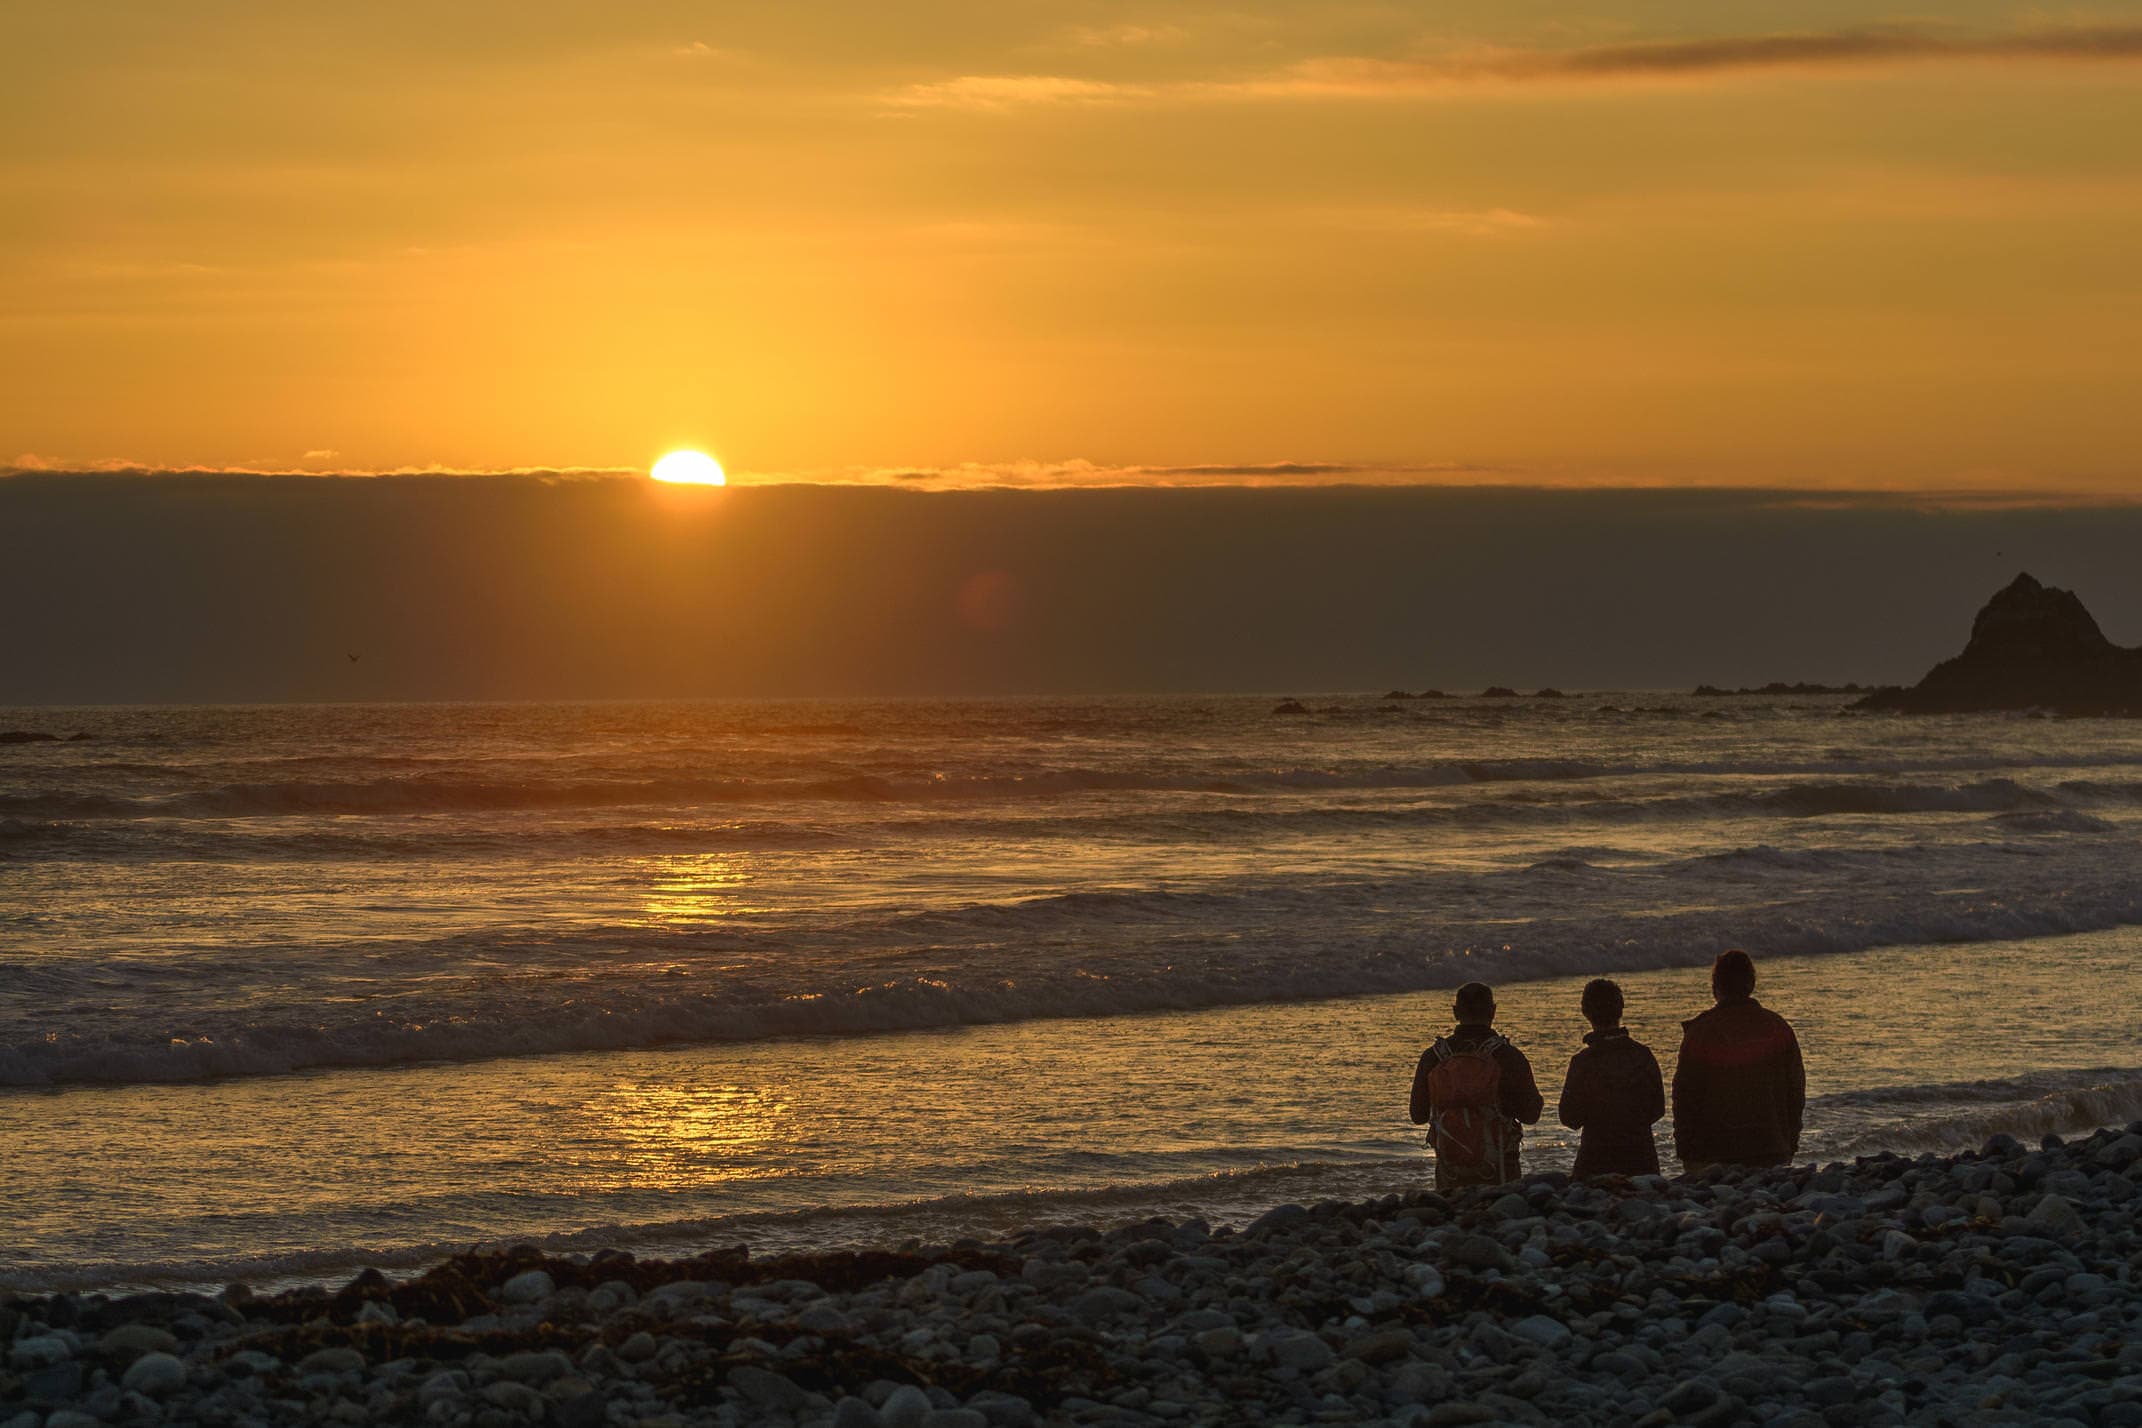 Chile copiapo coast sunset c alvaro guide